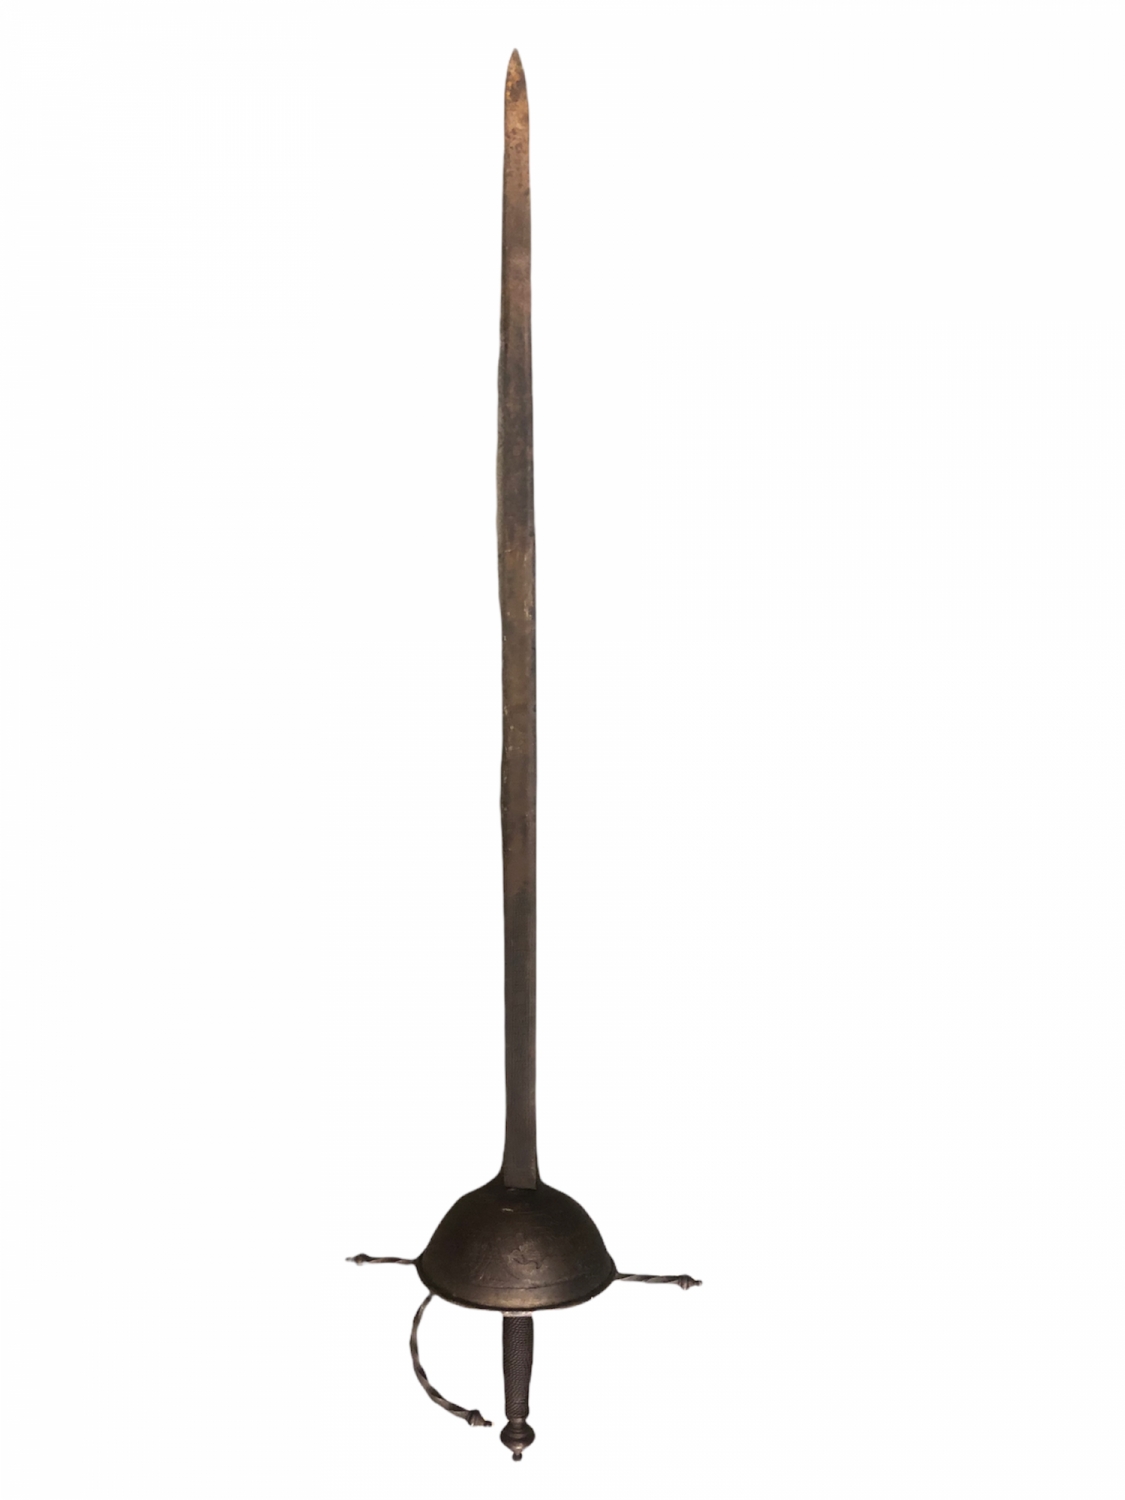 Starý kord ručně dělaný, délka 105 cm